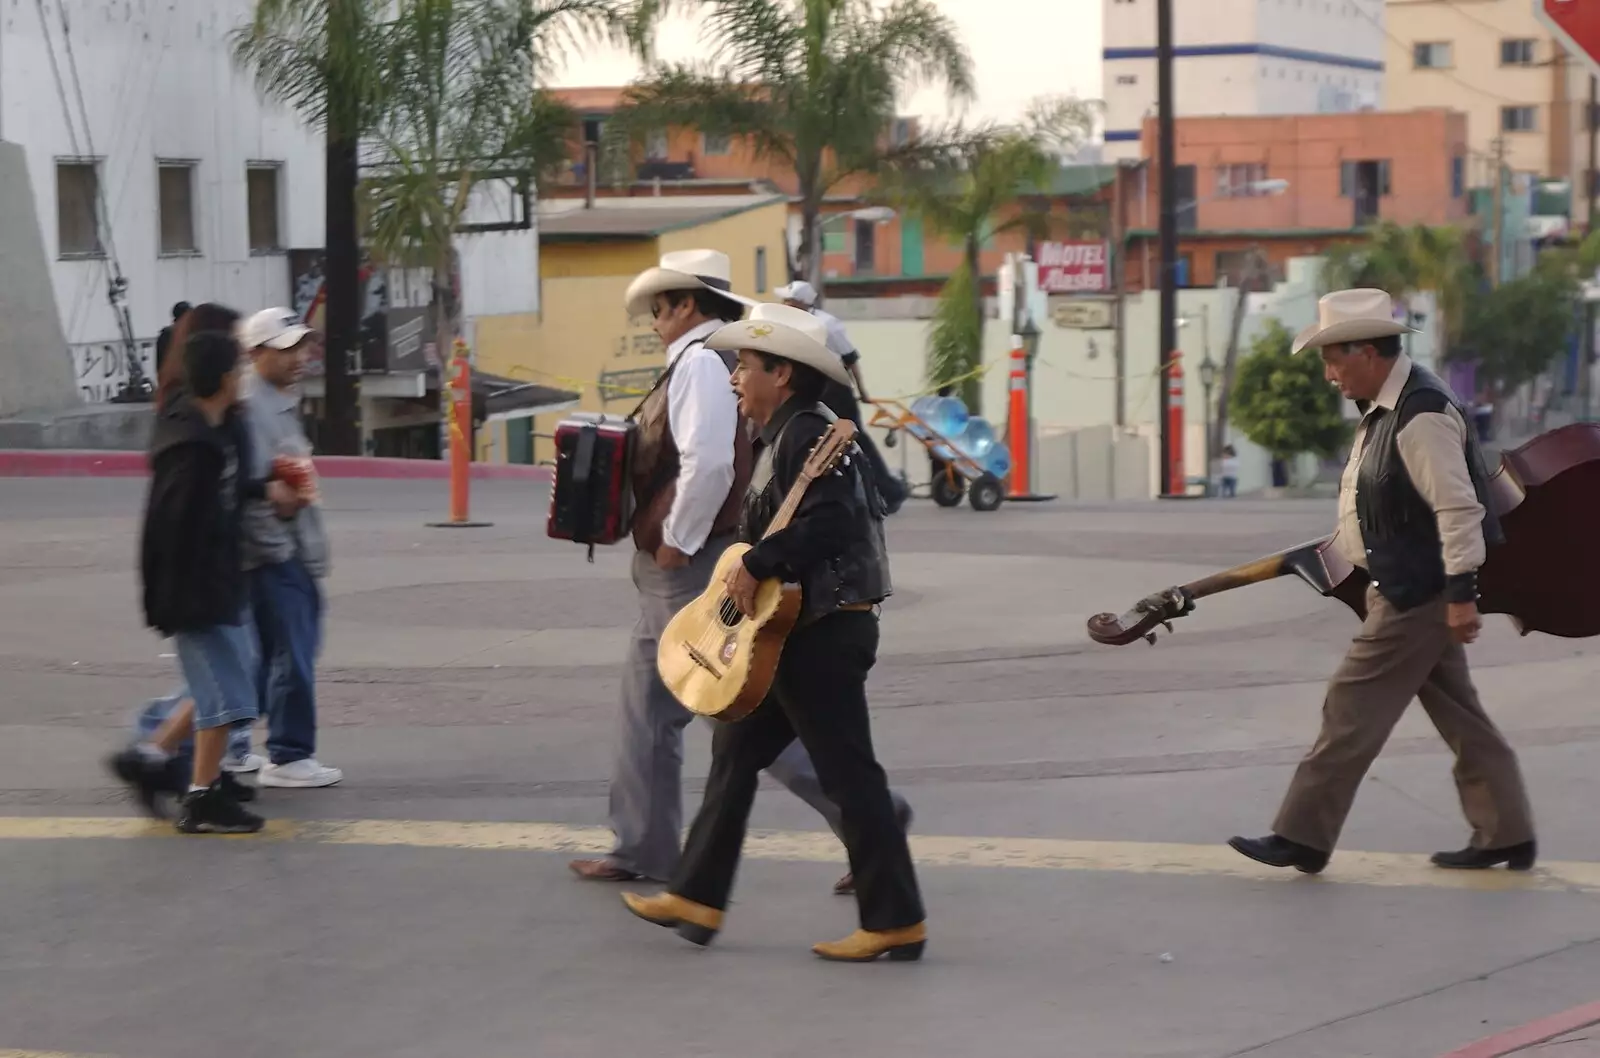 More musicians roam Avenue de la Revolucion, from Rosarito and Tijuana, Baja California, Mexico - 2nd March 2008